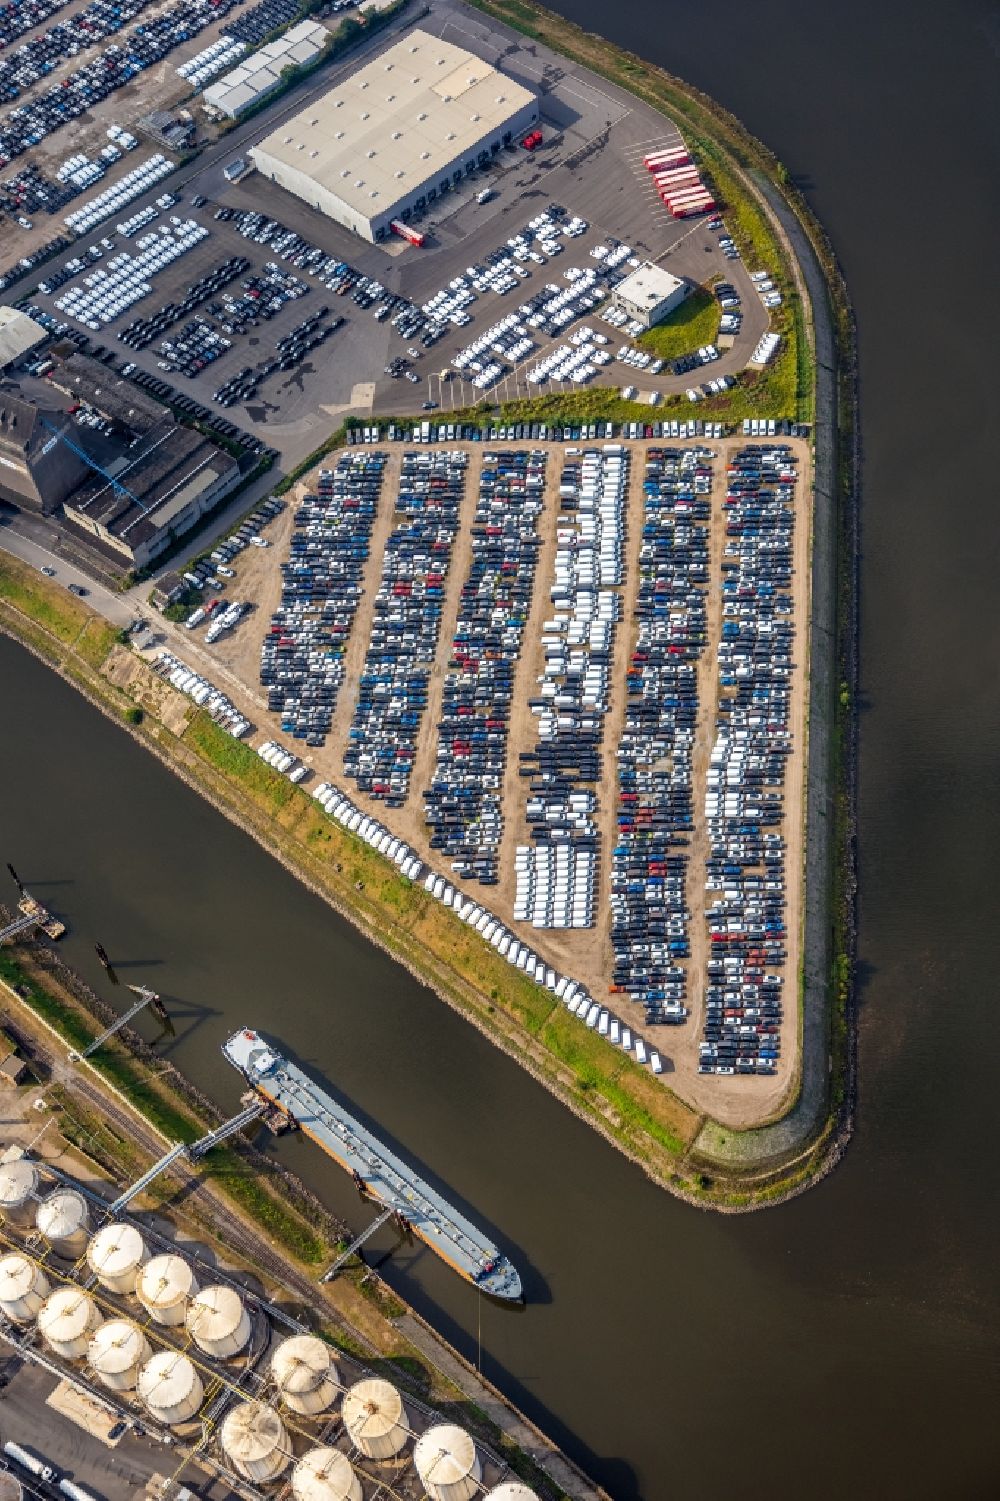 Luftbild Neuss - Neufahrzeuge auf den Abstellflächen des Binnenhafen in Neuss im Bundesland Nordrhein-Westfalen, Deutschland